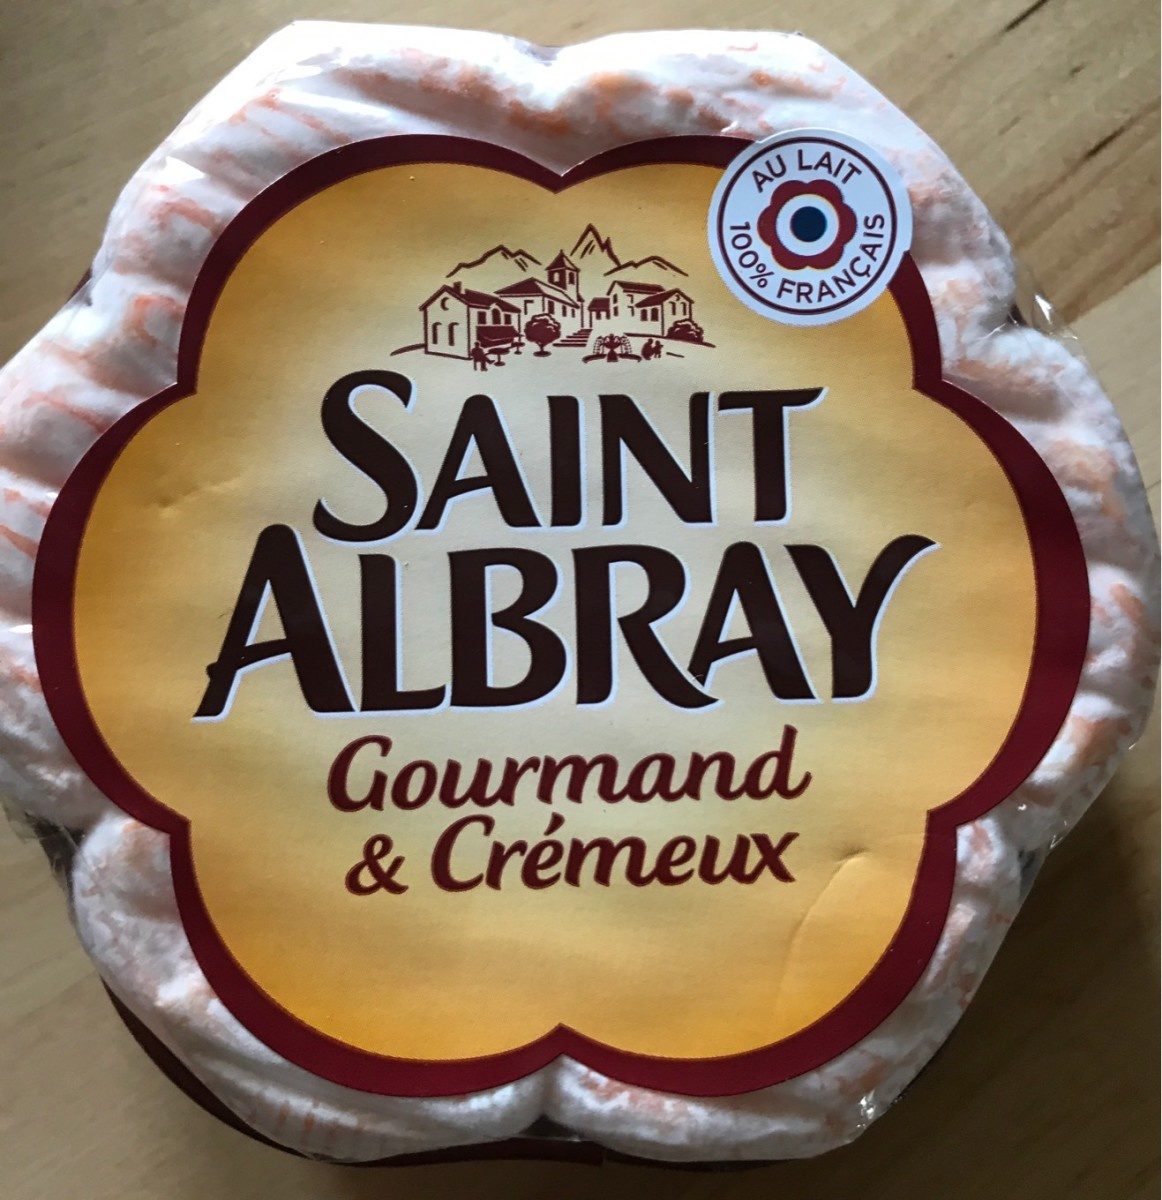 Saint Albray gourmand & crémeux - Product - fr